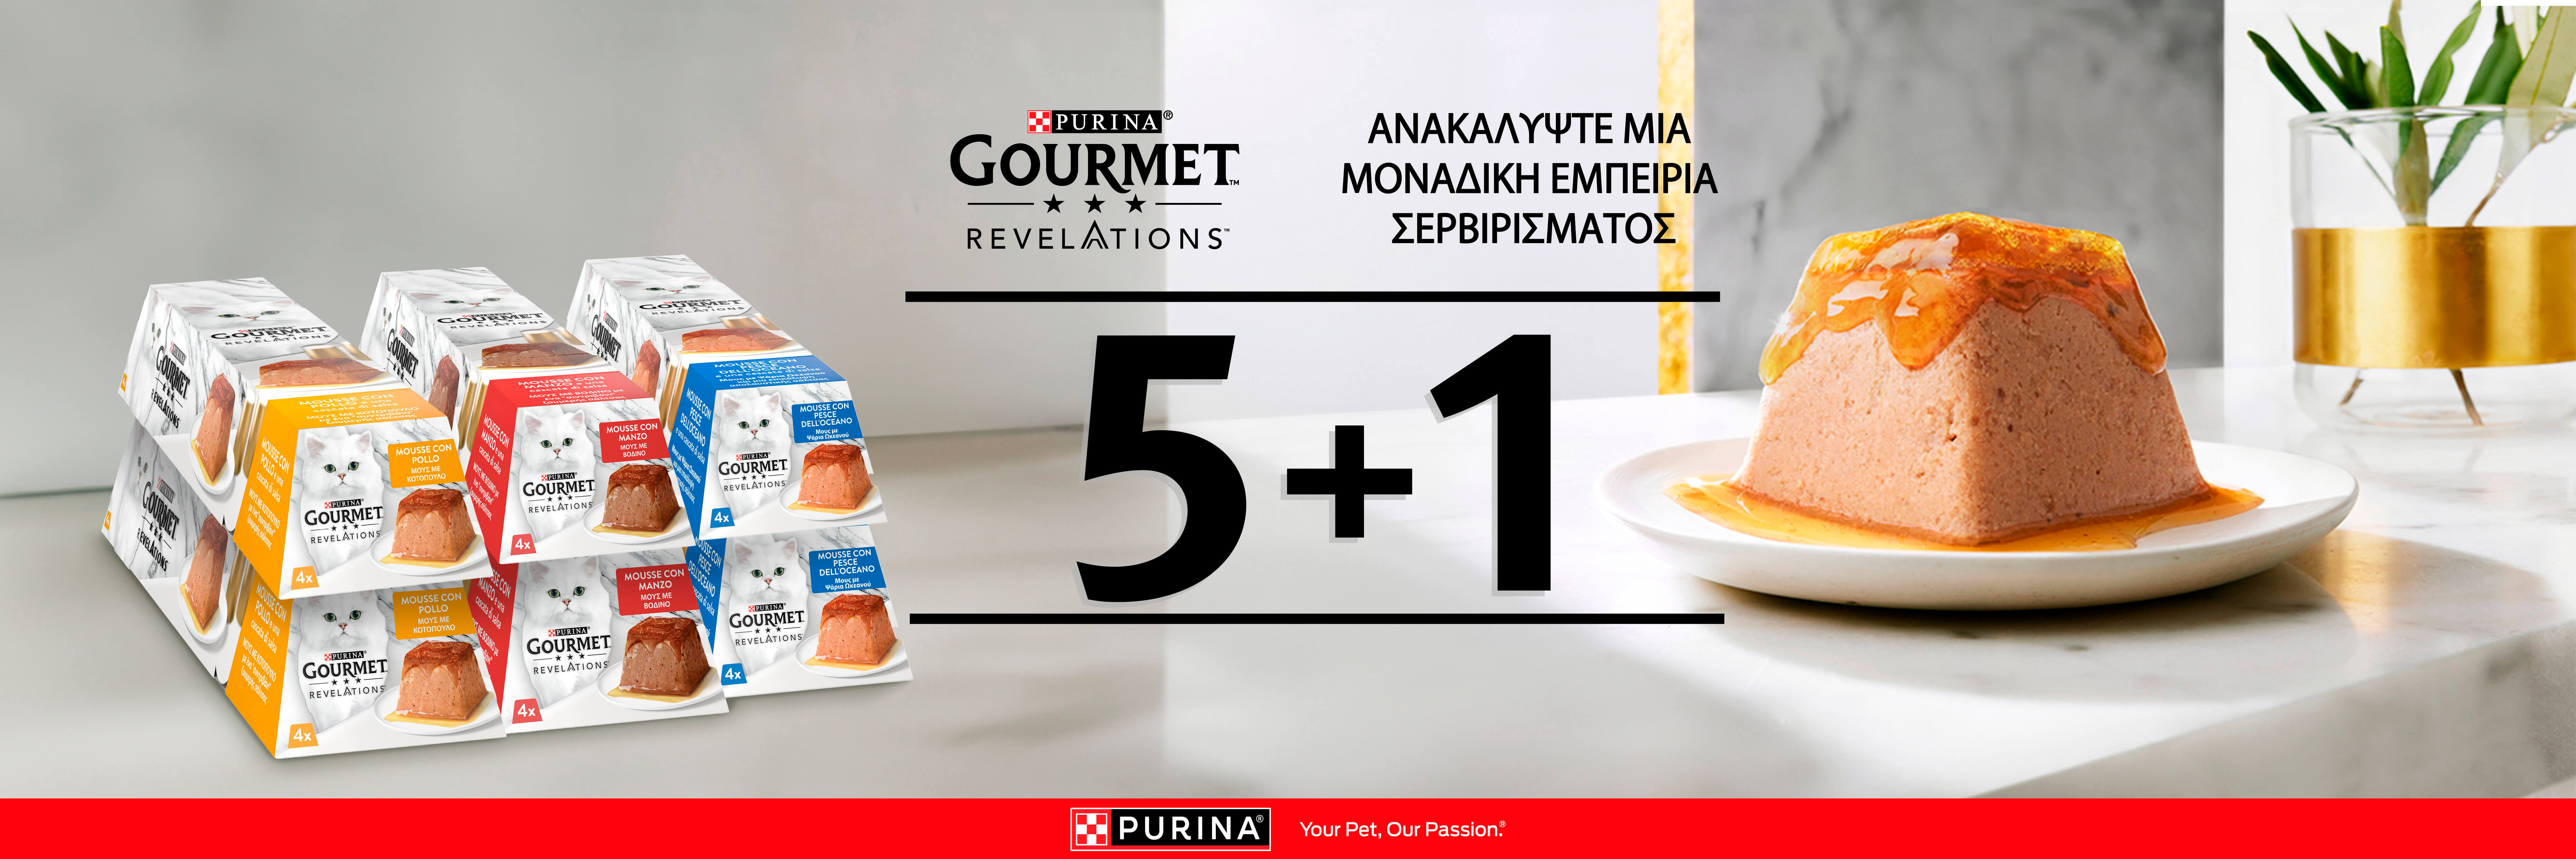 gourmet_offer